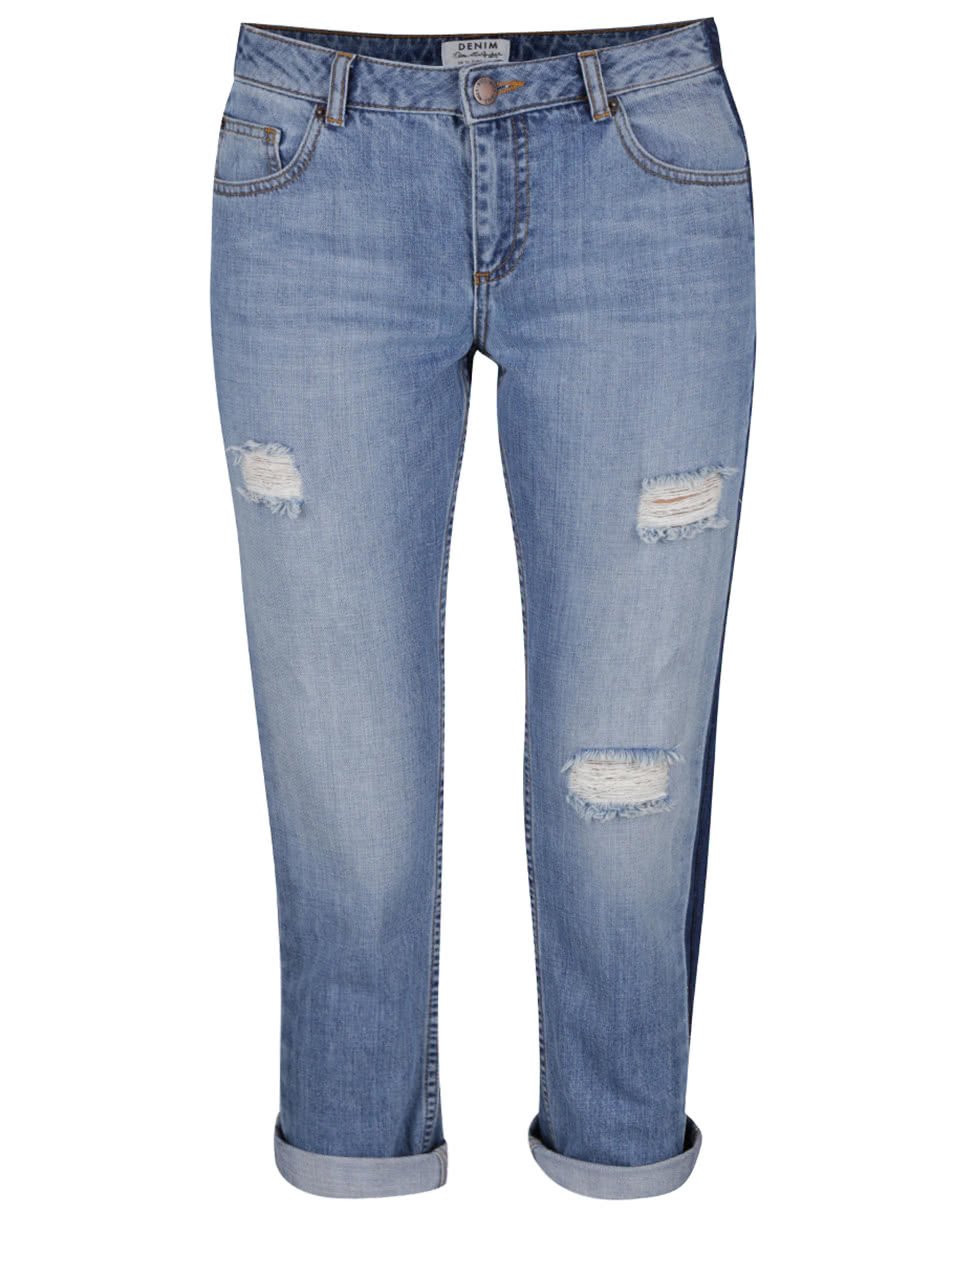 Modré osminkové džíny s potrhaným efektem a tmavým bočním pruhem Miss Selfridge